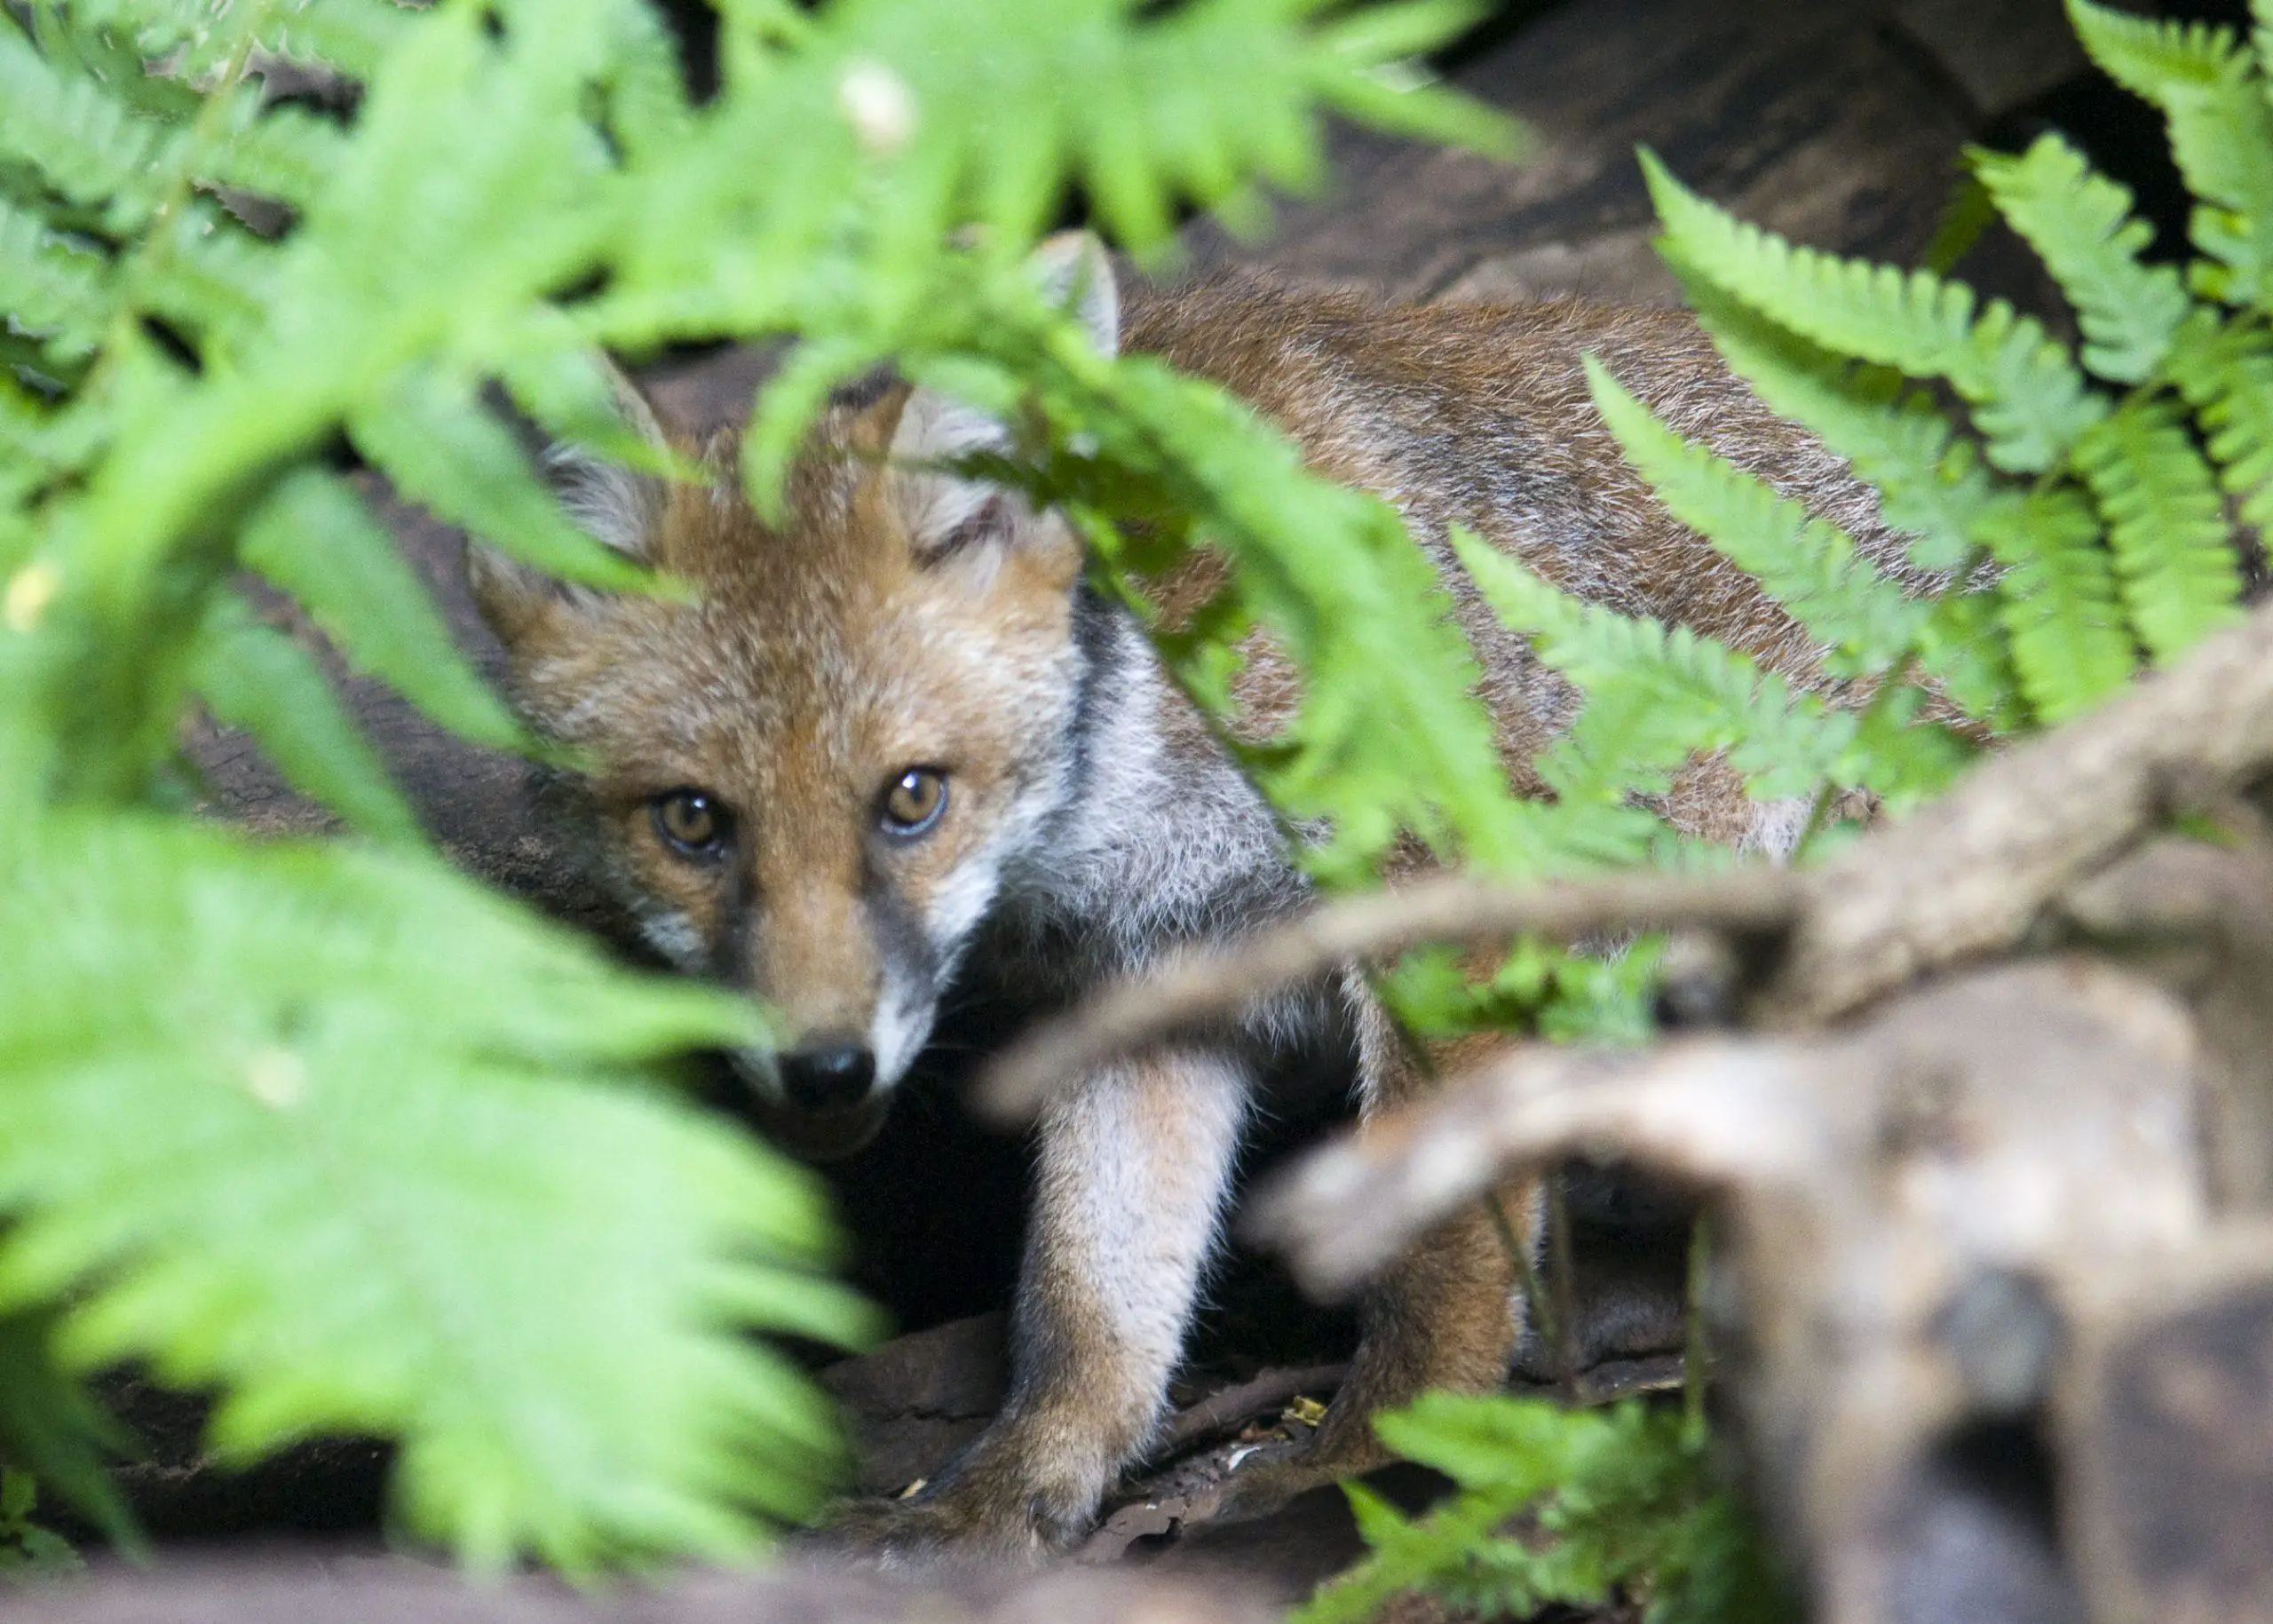 An adventurous fox cub peeks through the ferns